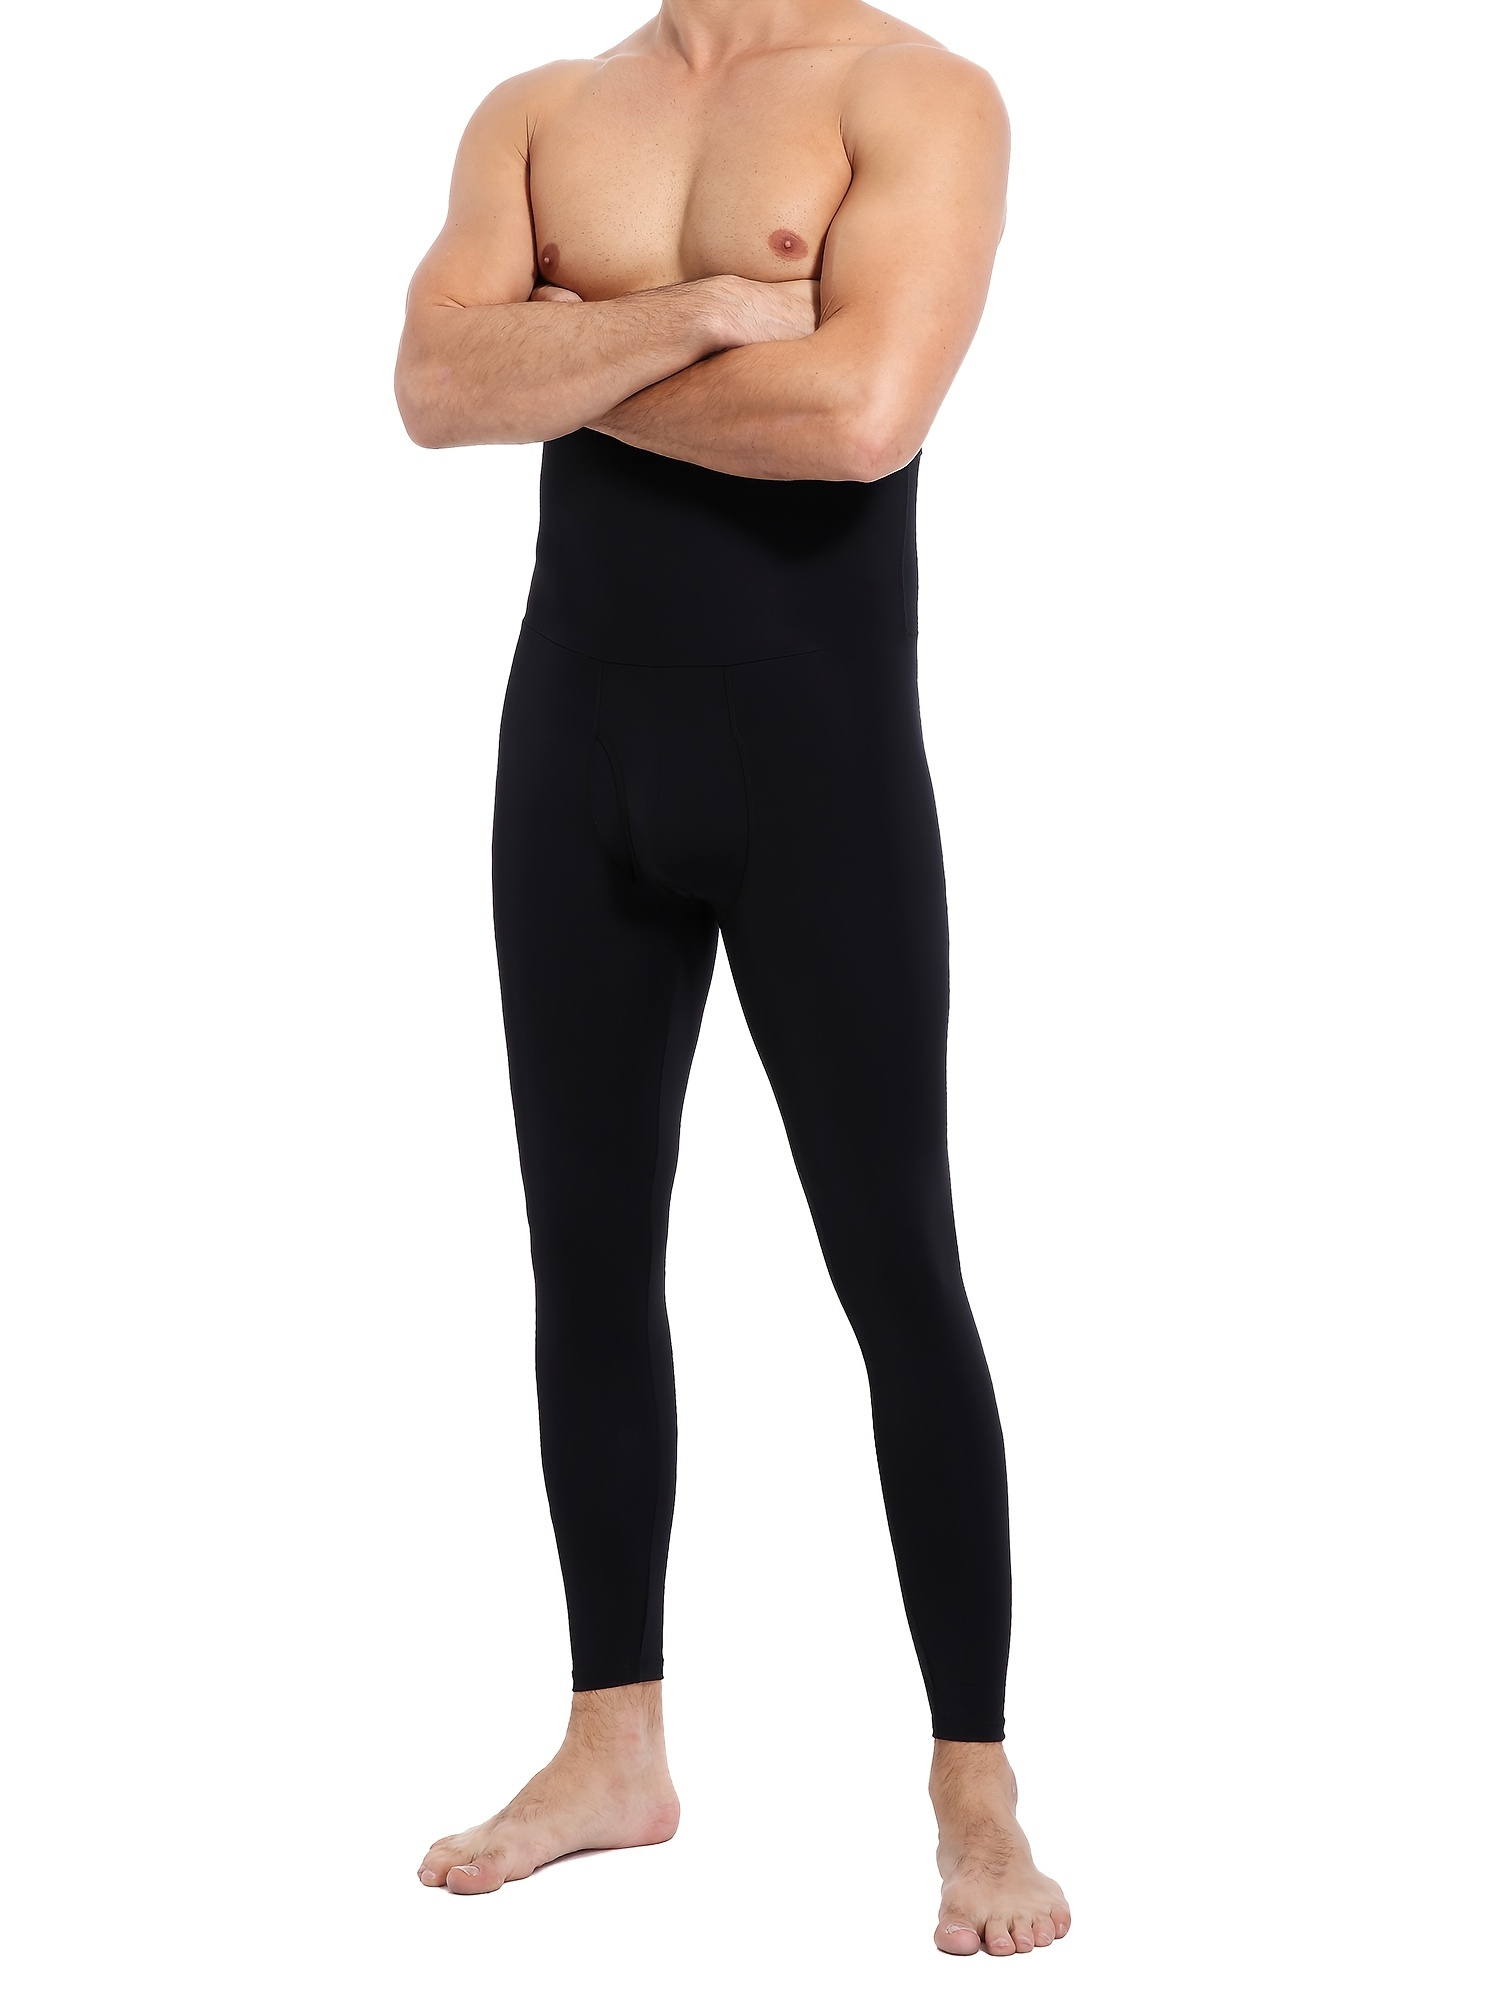 Men's Black Tummy Control Pants, High Waist Slimming Shapewear Body Shaper  Sport Leggings Underwear